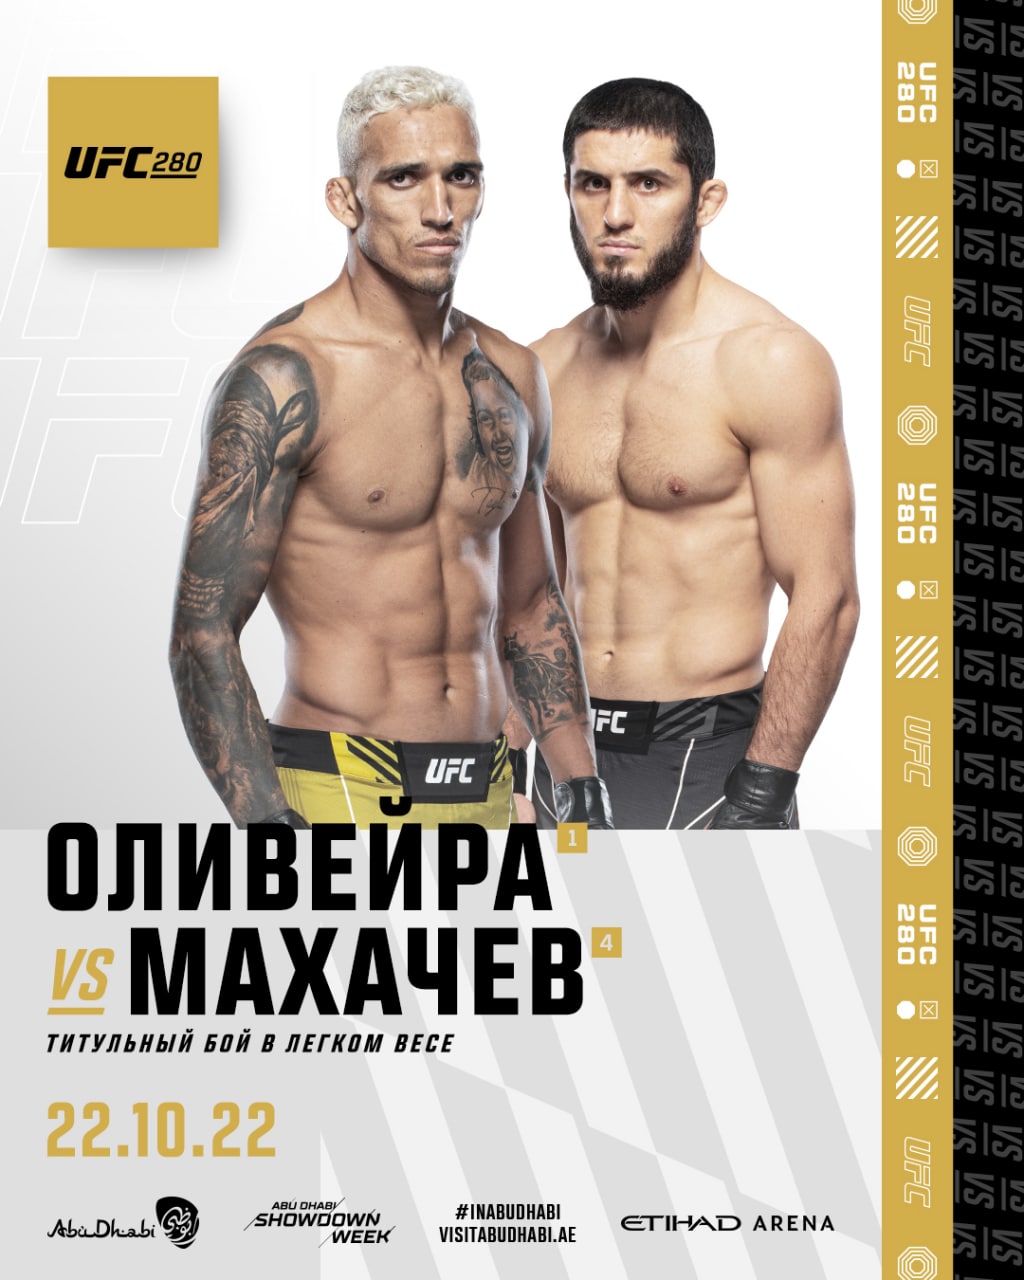 Фото: «UFC Russia»